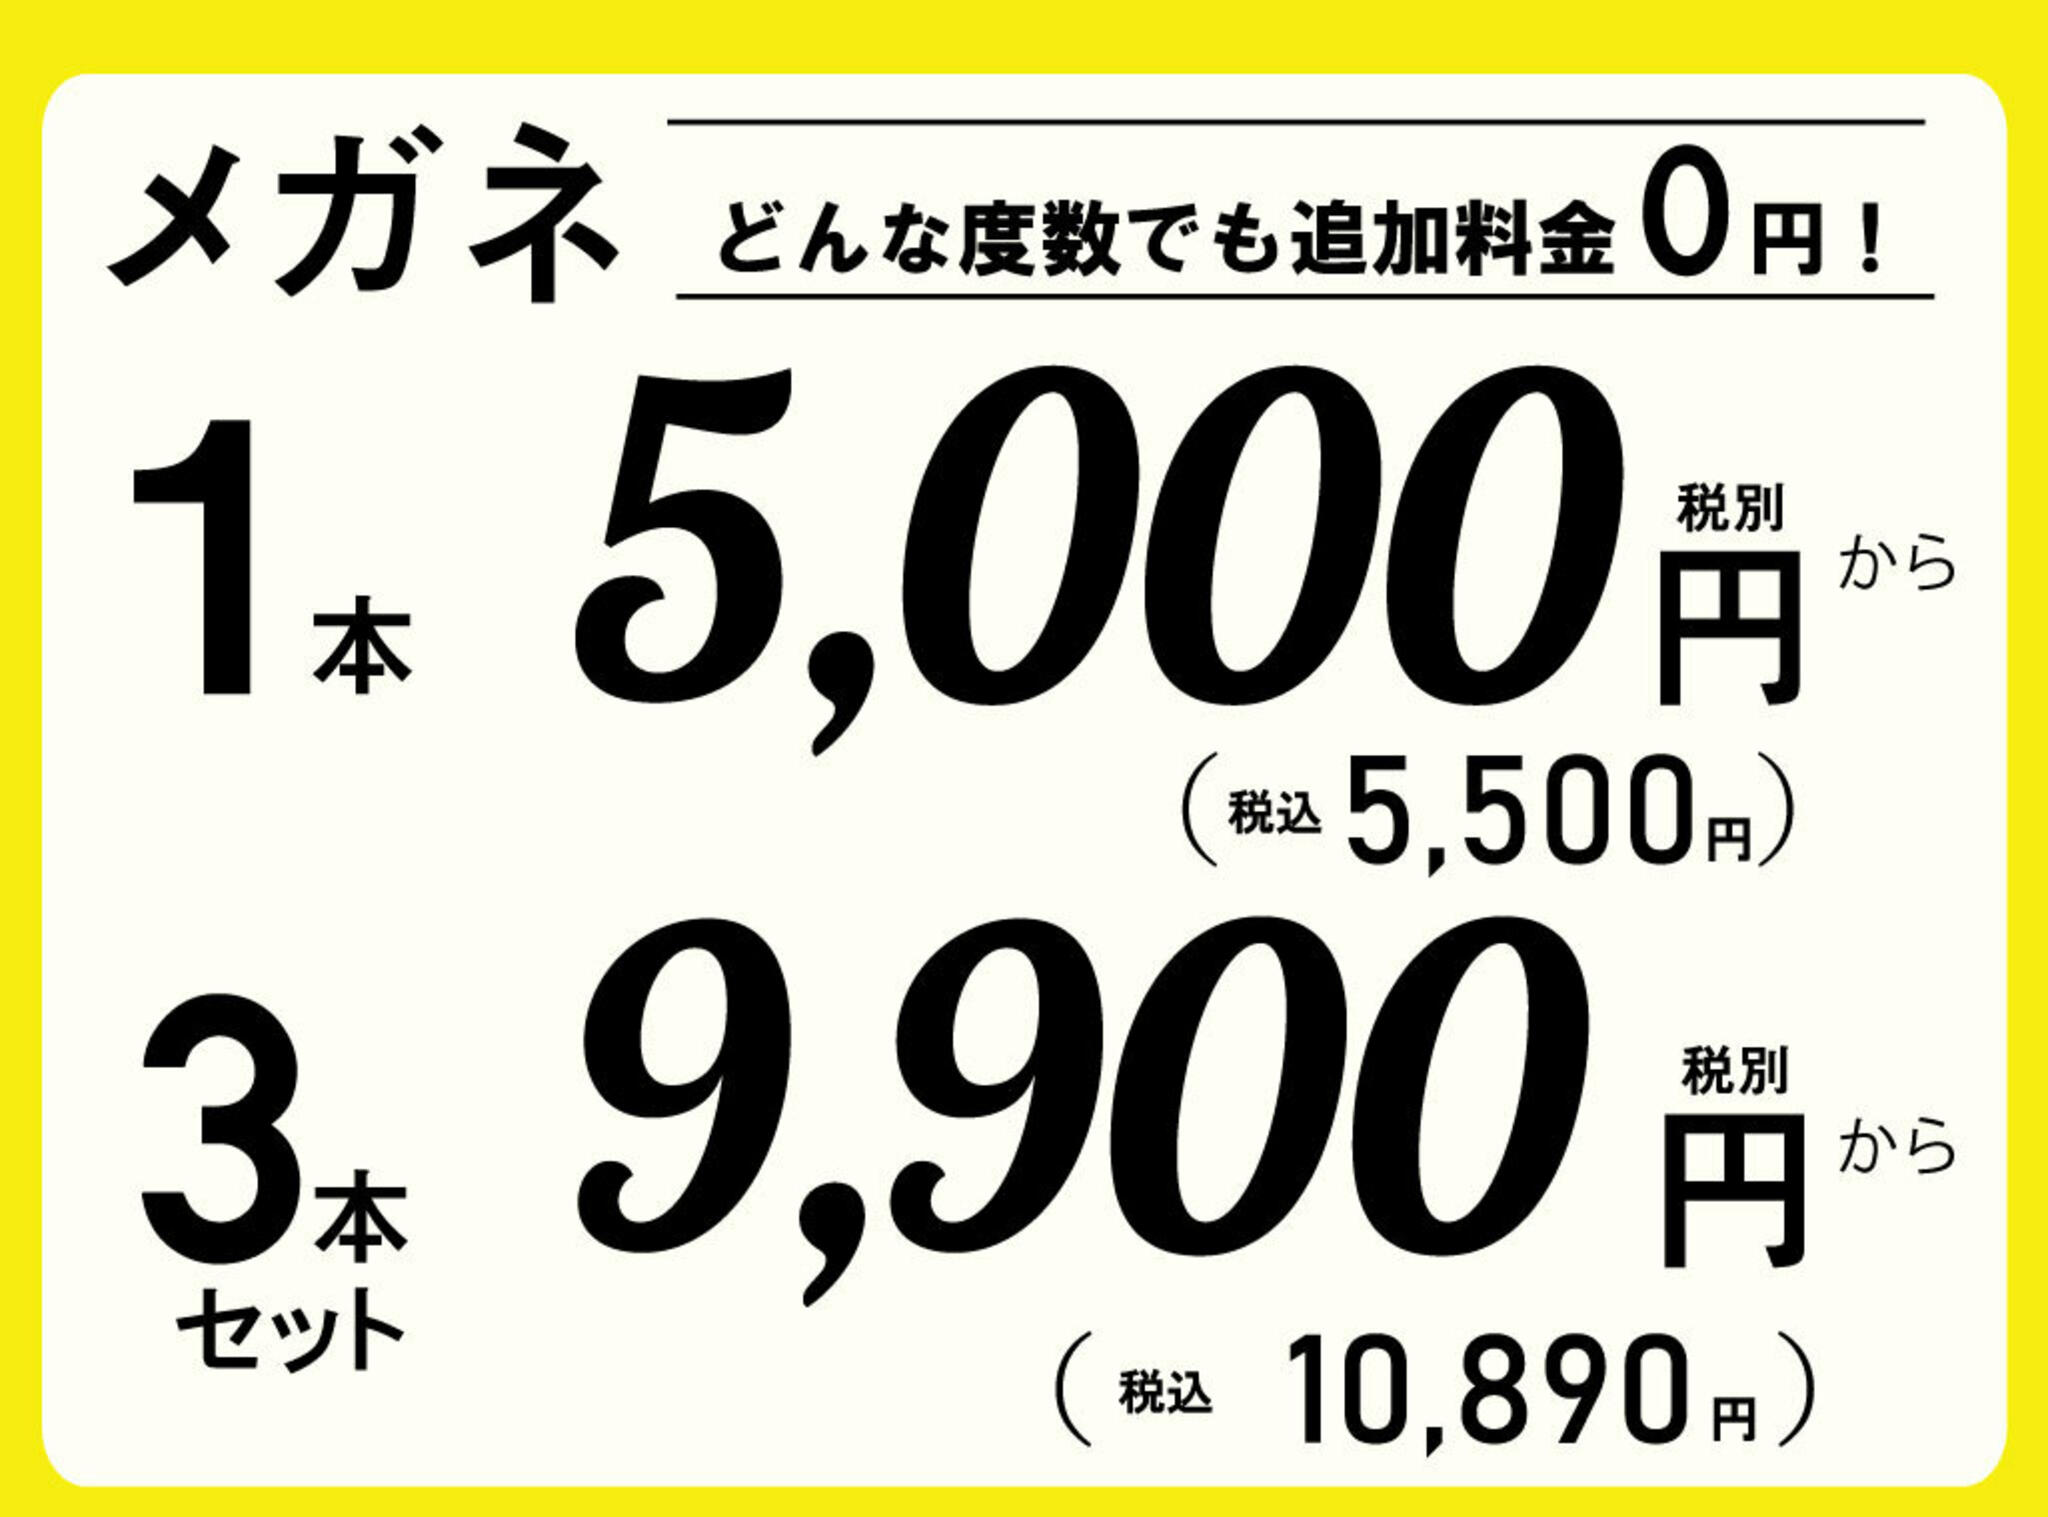 ドクターアイズ 兵庫加古川店からのお知らせ(低価格で高品質なメガネを販売するドクターアイズです。 )に関する写真